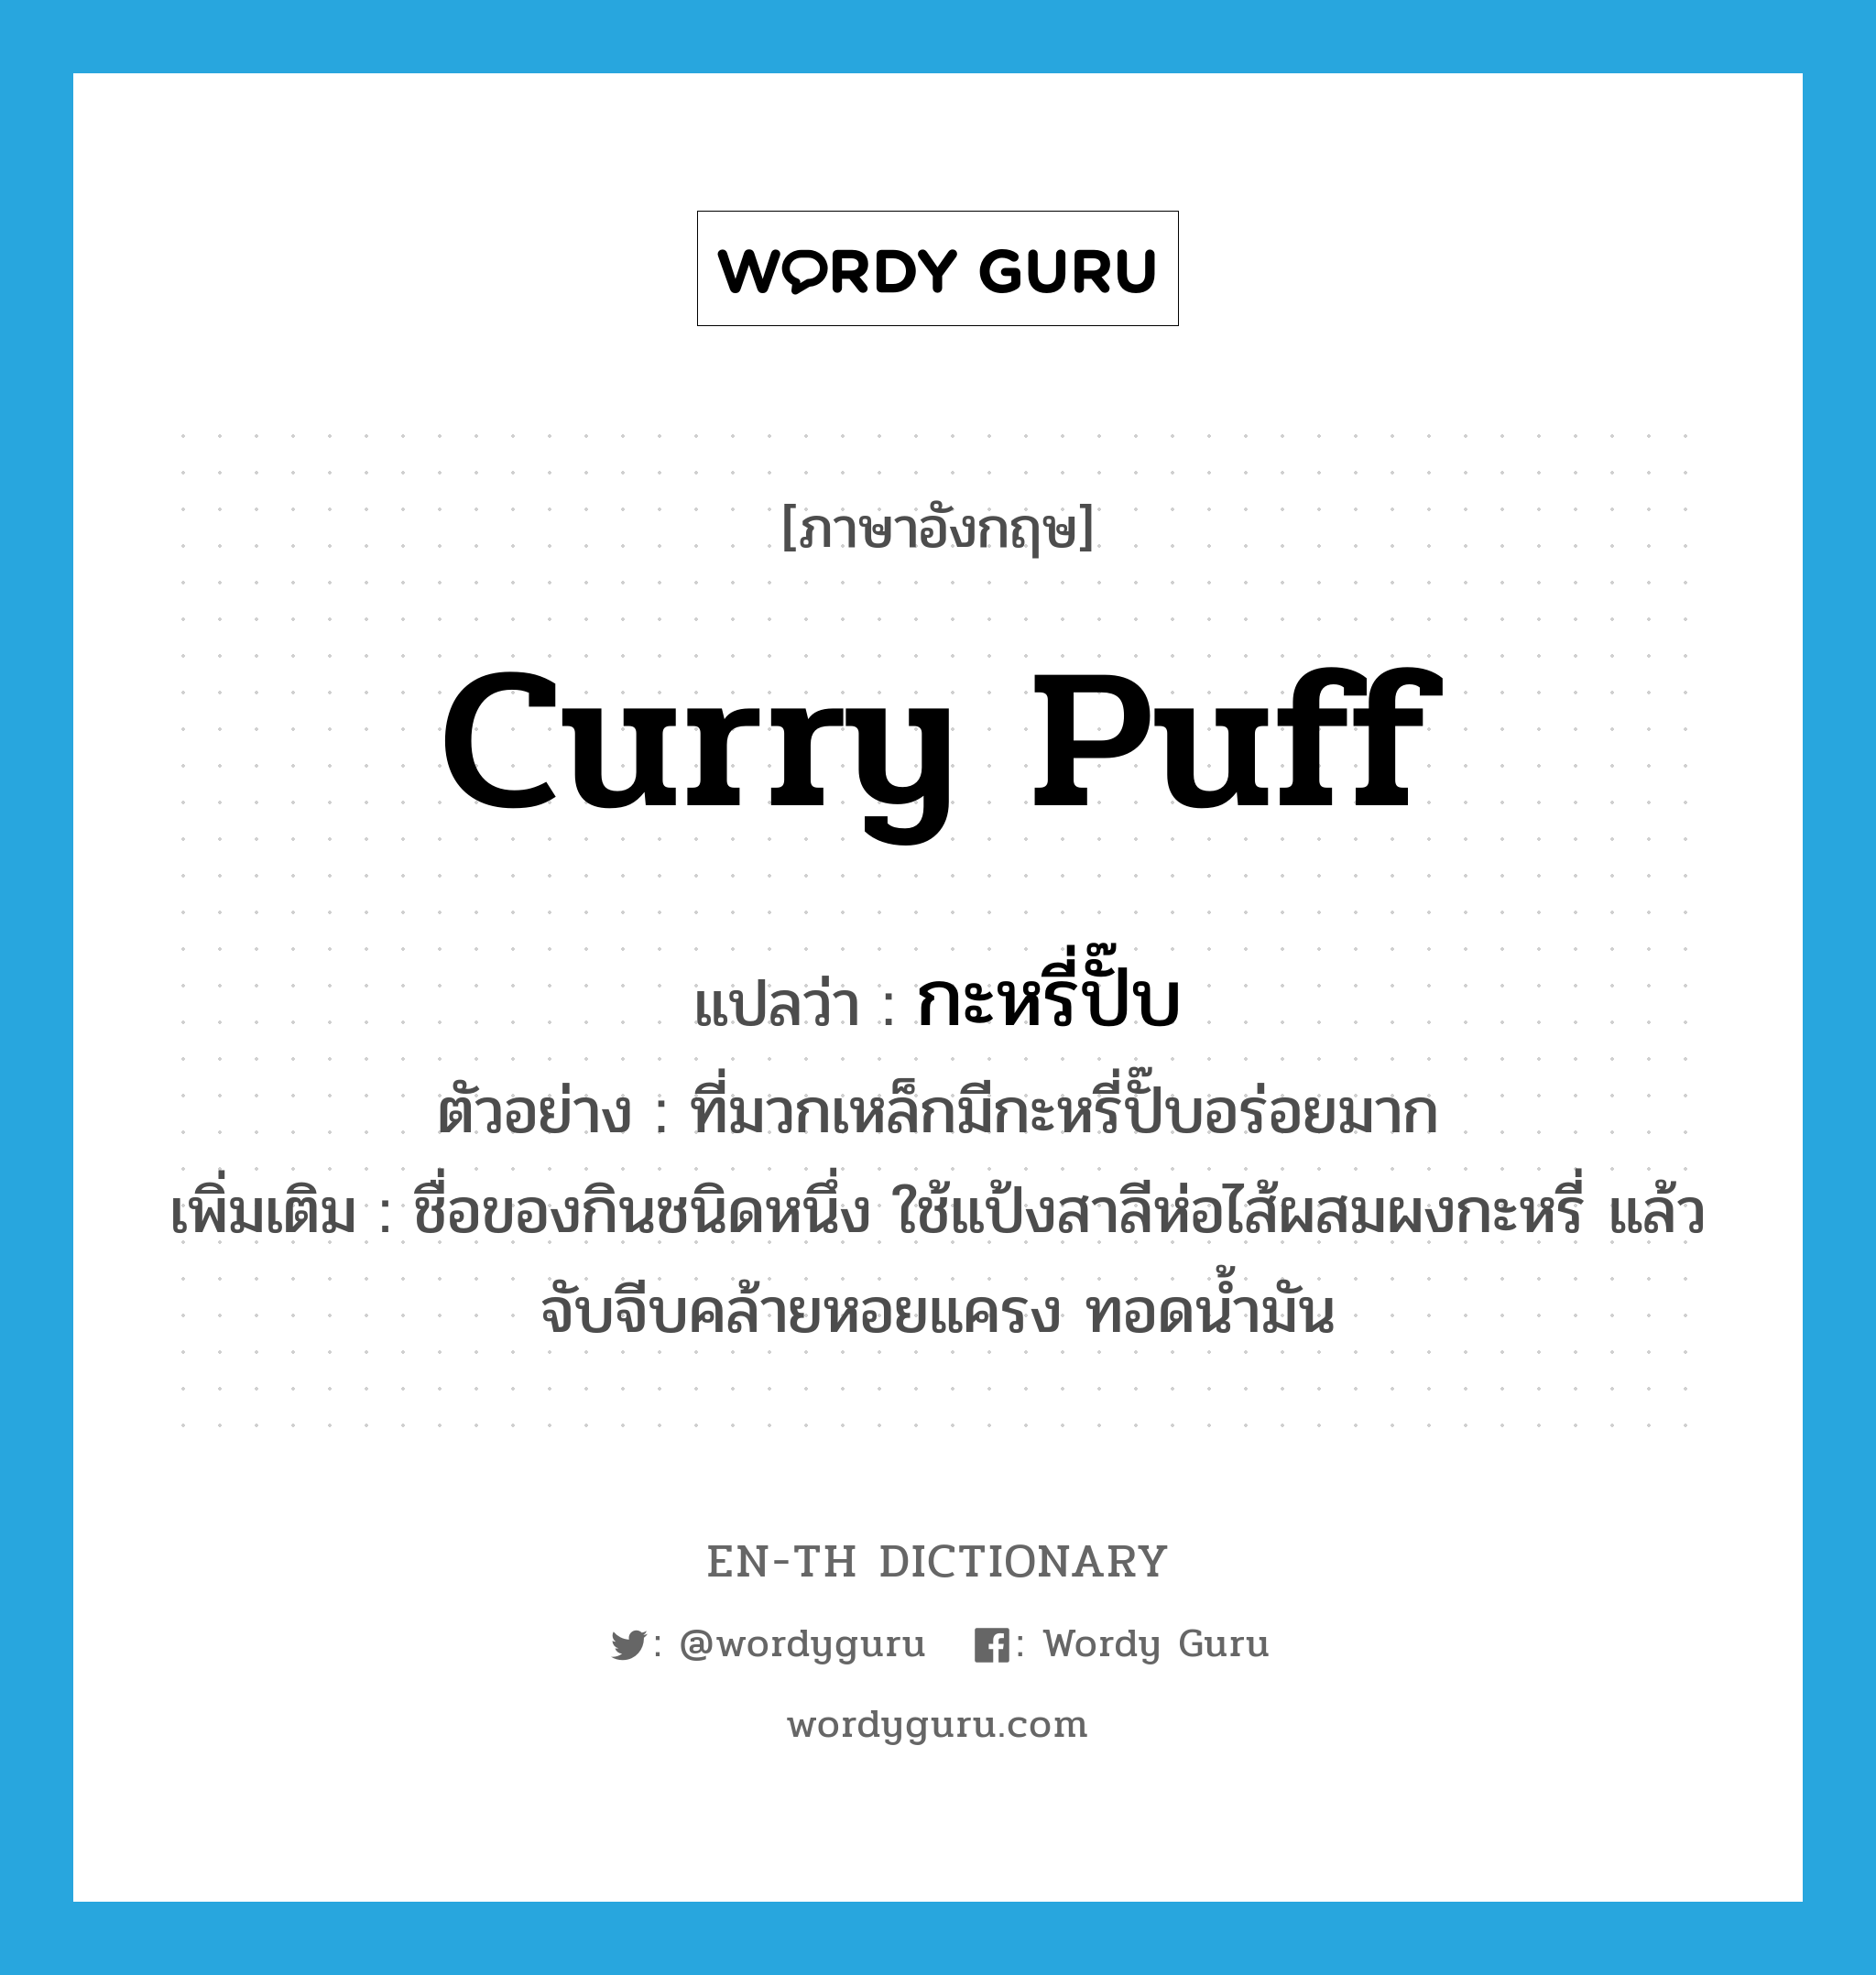 curry puff แปลว่า?, คำศัพท์ภาษาอังกฤษ curry puff แปลว่า กะหรี่ปั๊บ ประเภท N ตัวอย่าง ที่มวกเหล็กมีกะหรี่ปั๊บอร่อยมาก เพิ่มเติม ชื่อของกินชนิดหนึ่ง ใช้แป้งสาลีห่อไส้ผสมผงกะหรี่ แล้วจับจีบคล้ายหอยแครง ทอดน้ำมัน หมวด N